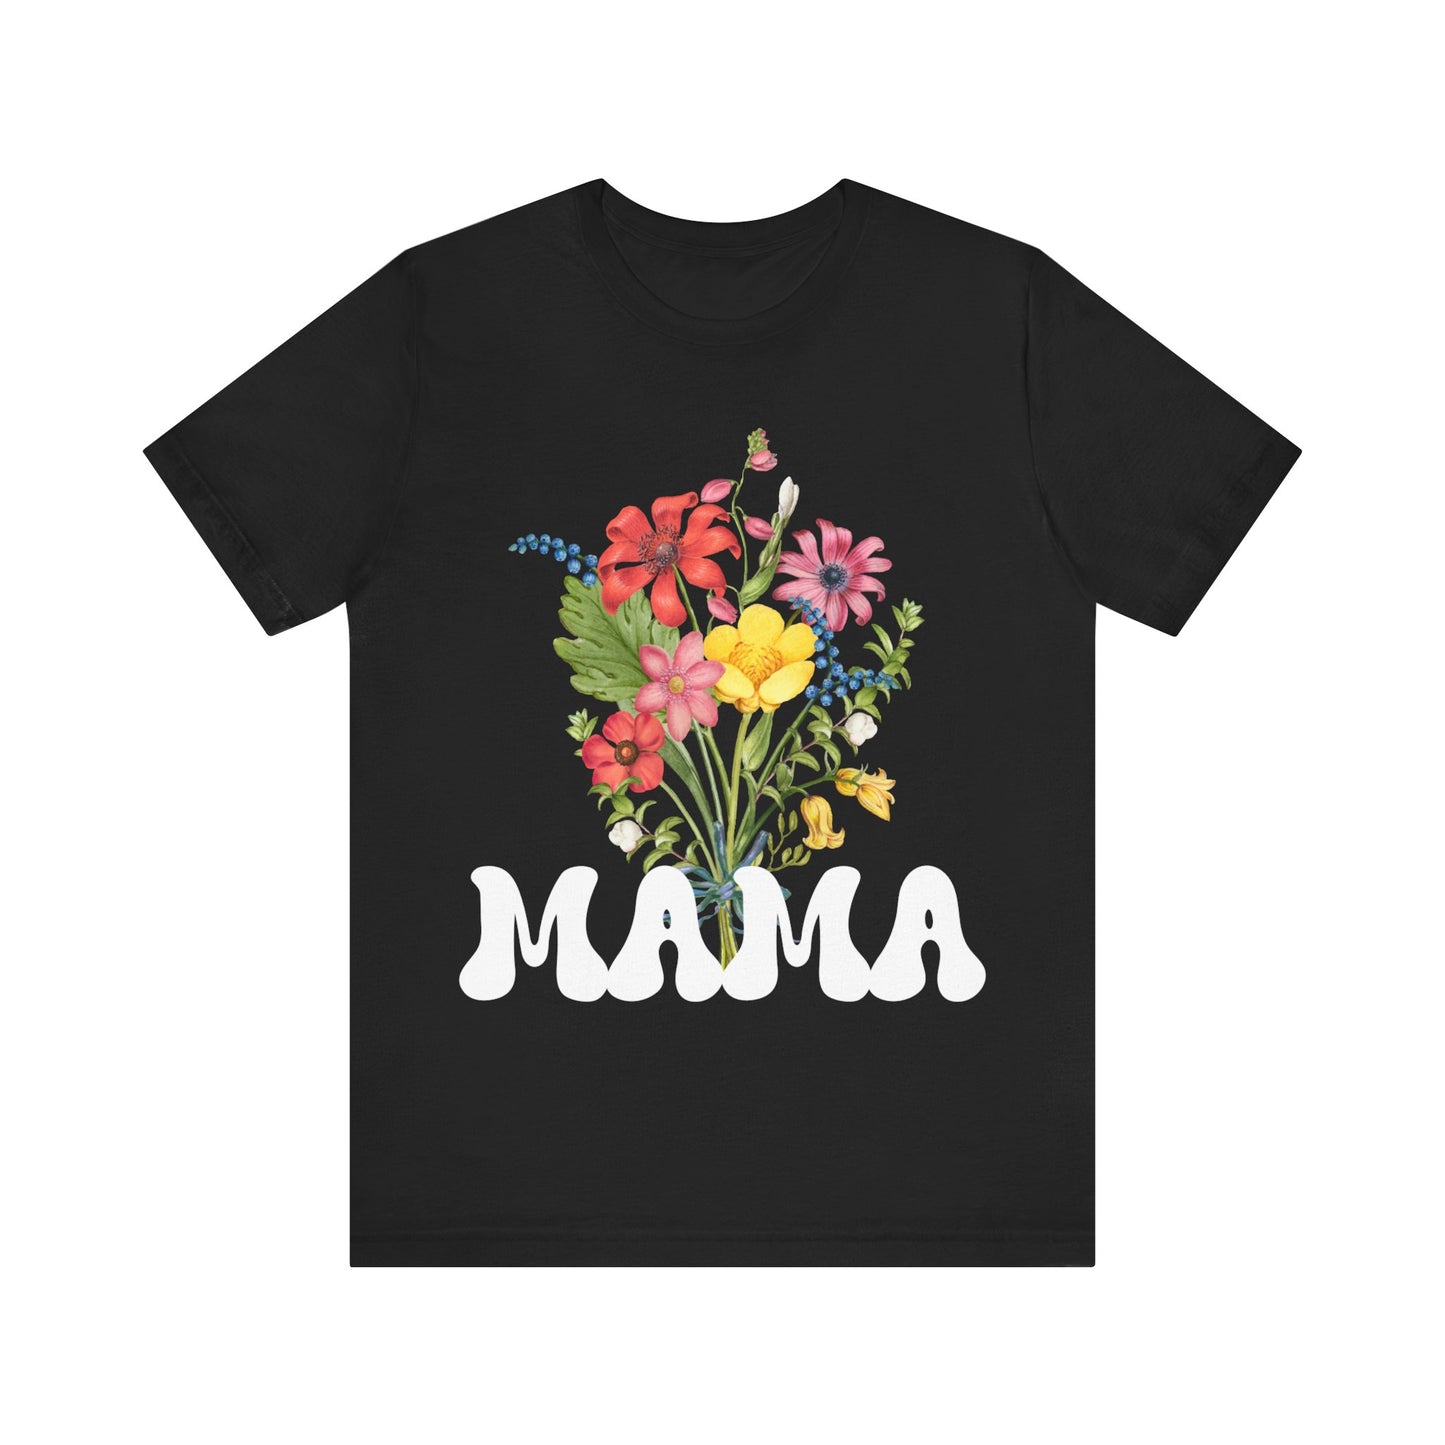 Mama Shirt, Happy Mother's Day Gift, Nana Shirt, Mom Shirt, Funny Mom Tshirt, Mom Club Shirt